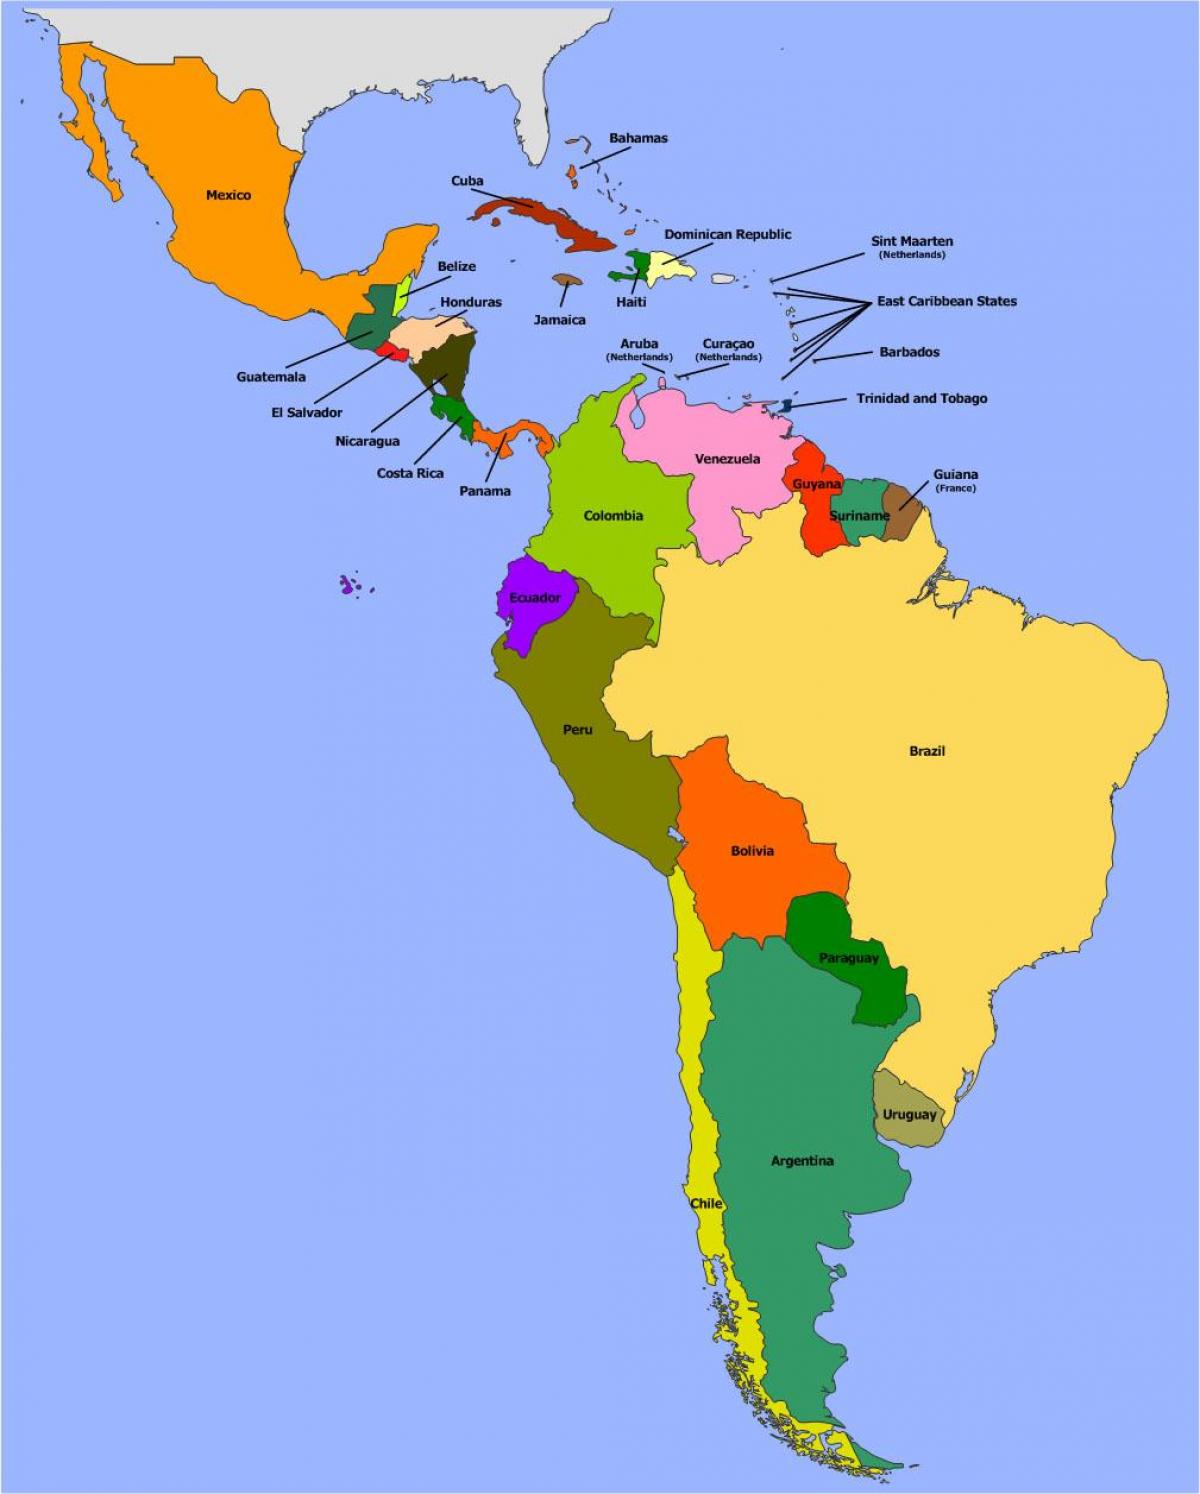 Kort over Belize syd amerika